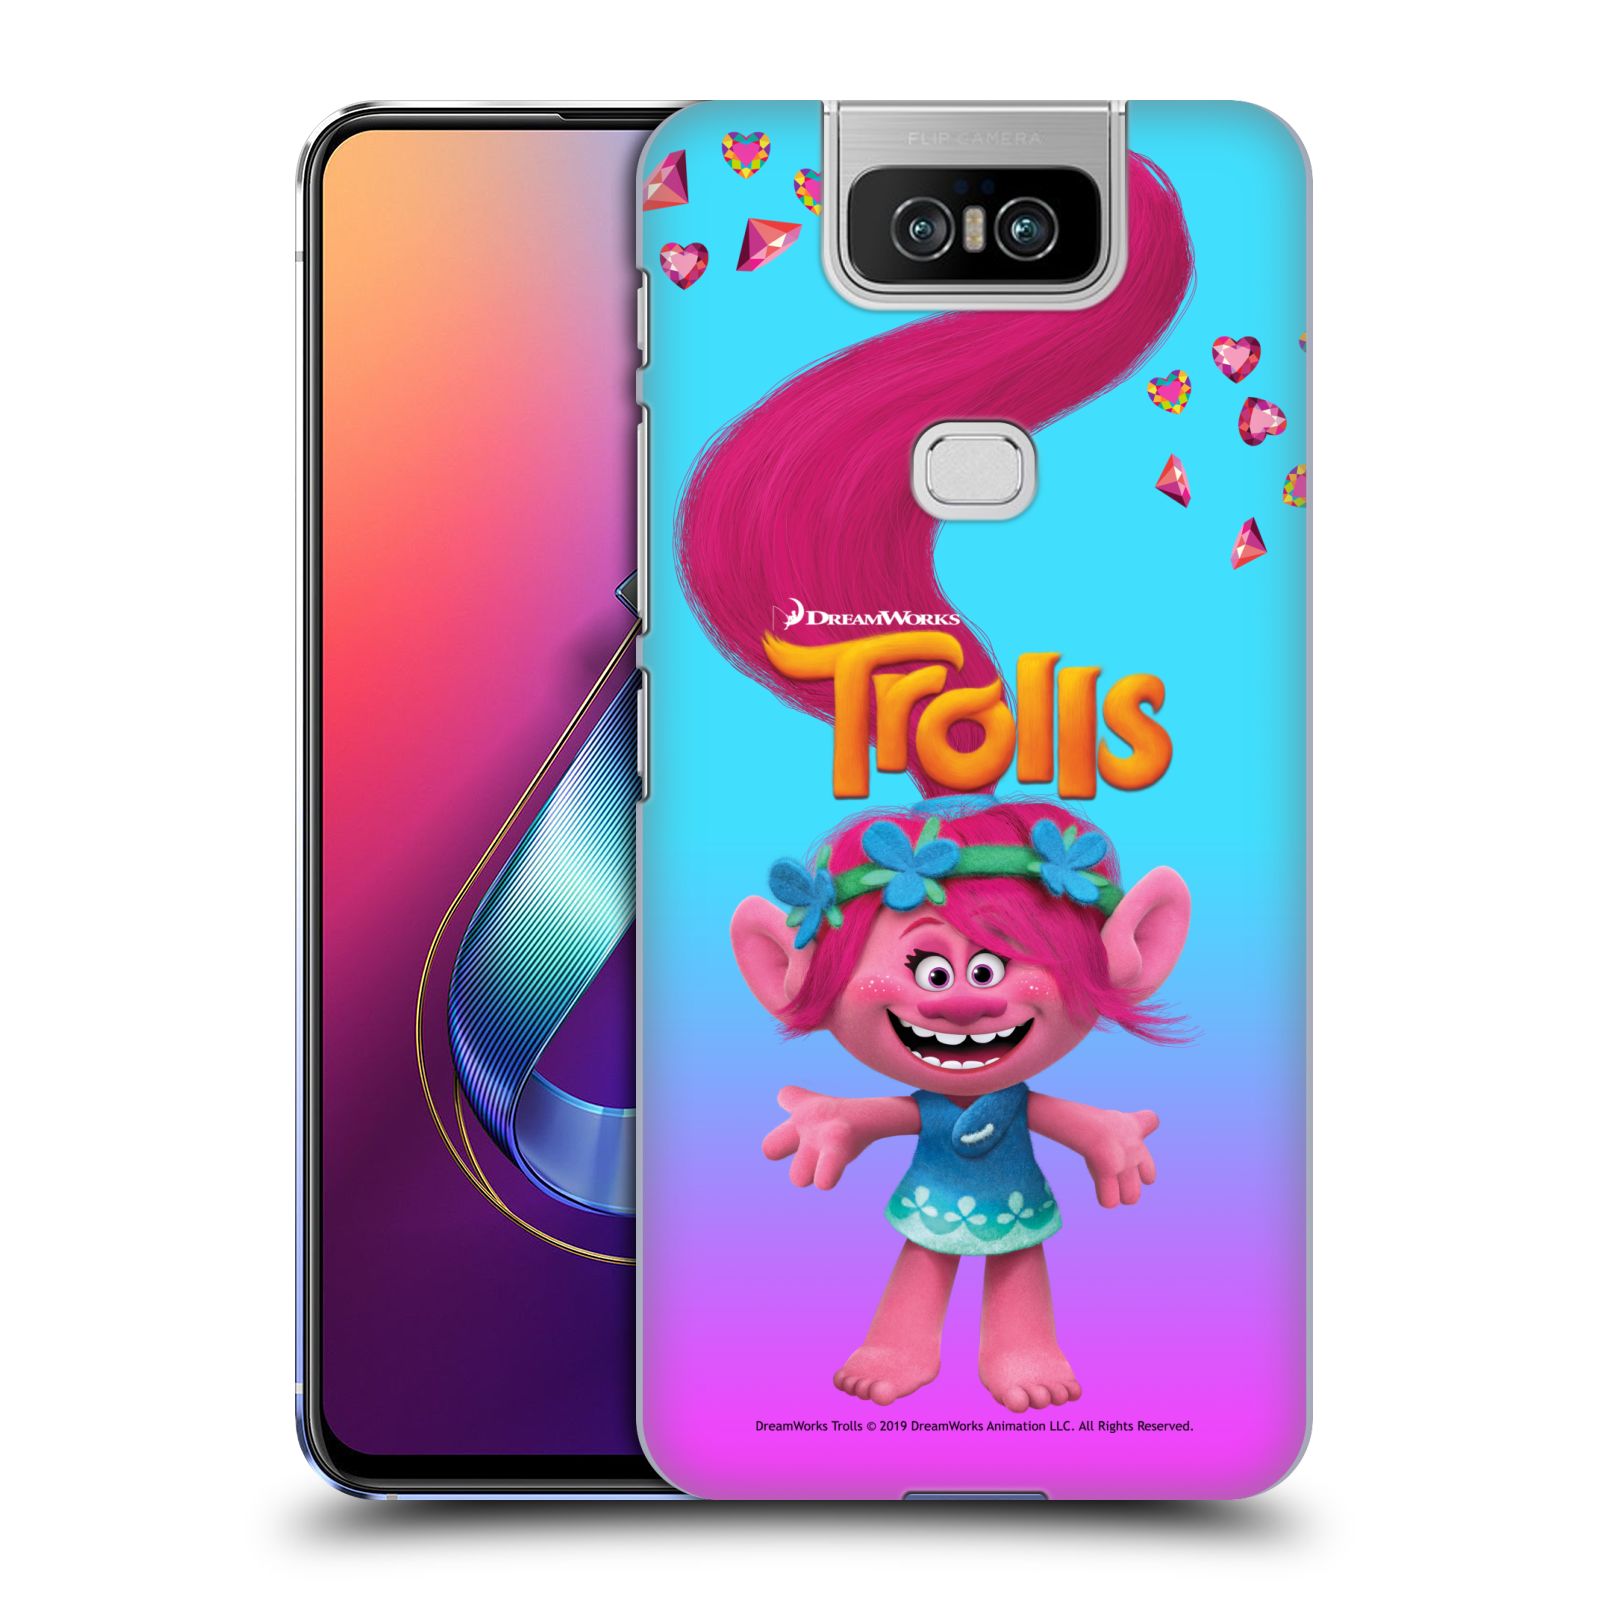 Pouzdro na mobil ASUS Zenfone 6 ZS630KL - HEAD CASE - Pohádka - Trollové skřítek holčička Poppy